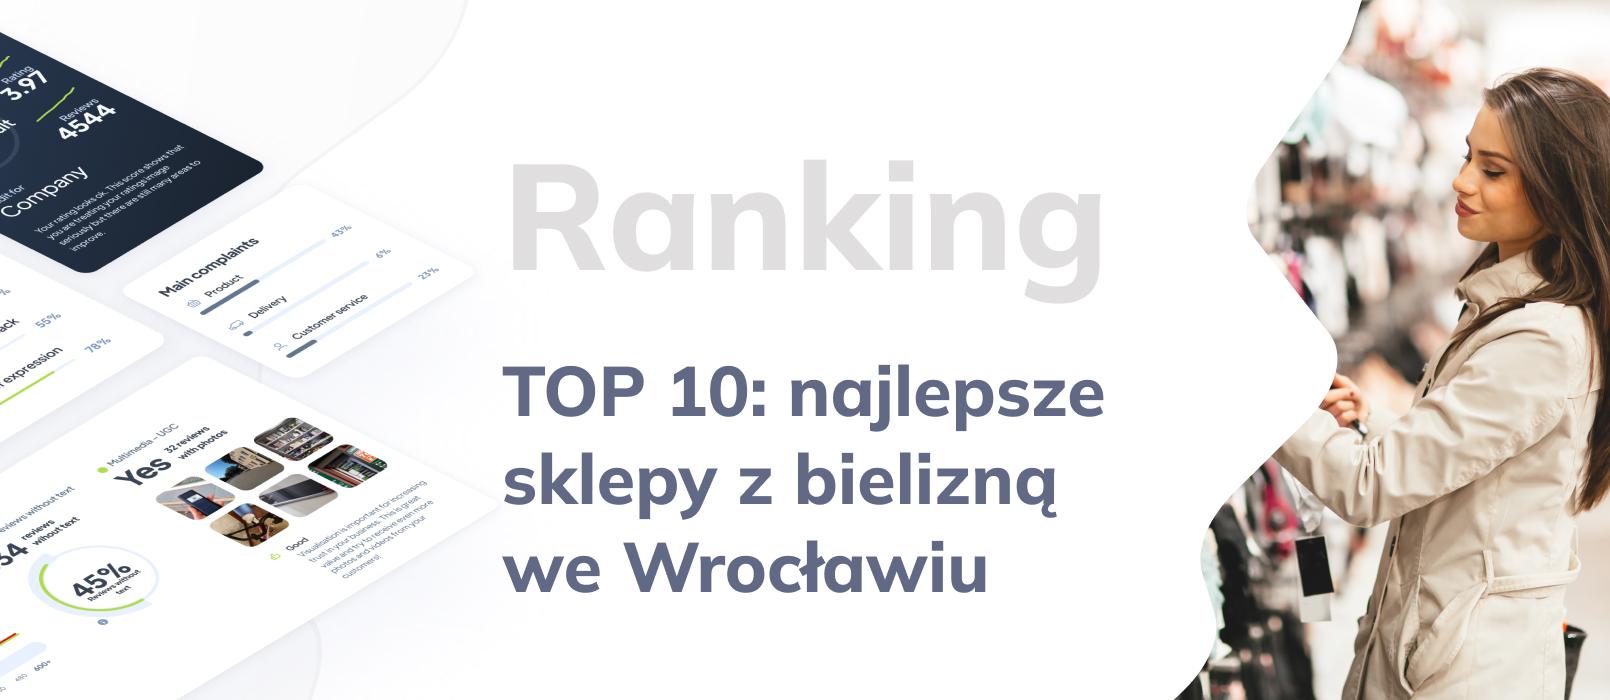 TOP 10: Ranking sklepów z bielizną, czyli najlepsze sklepy z bielizną we Wrocławiu